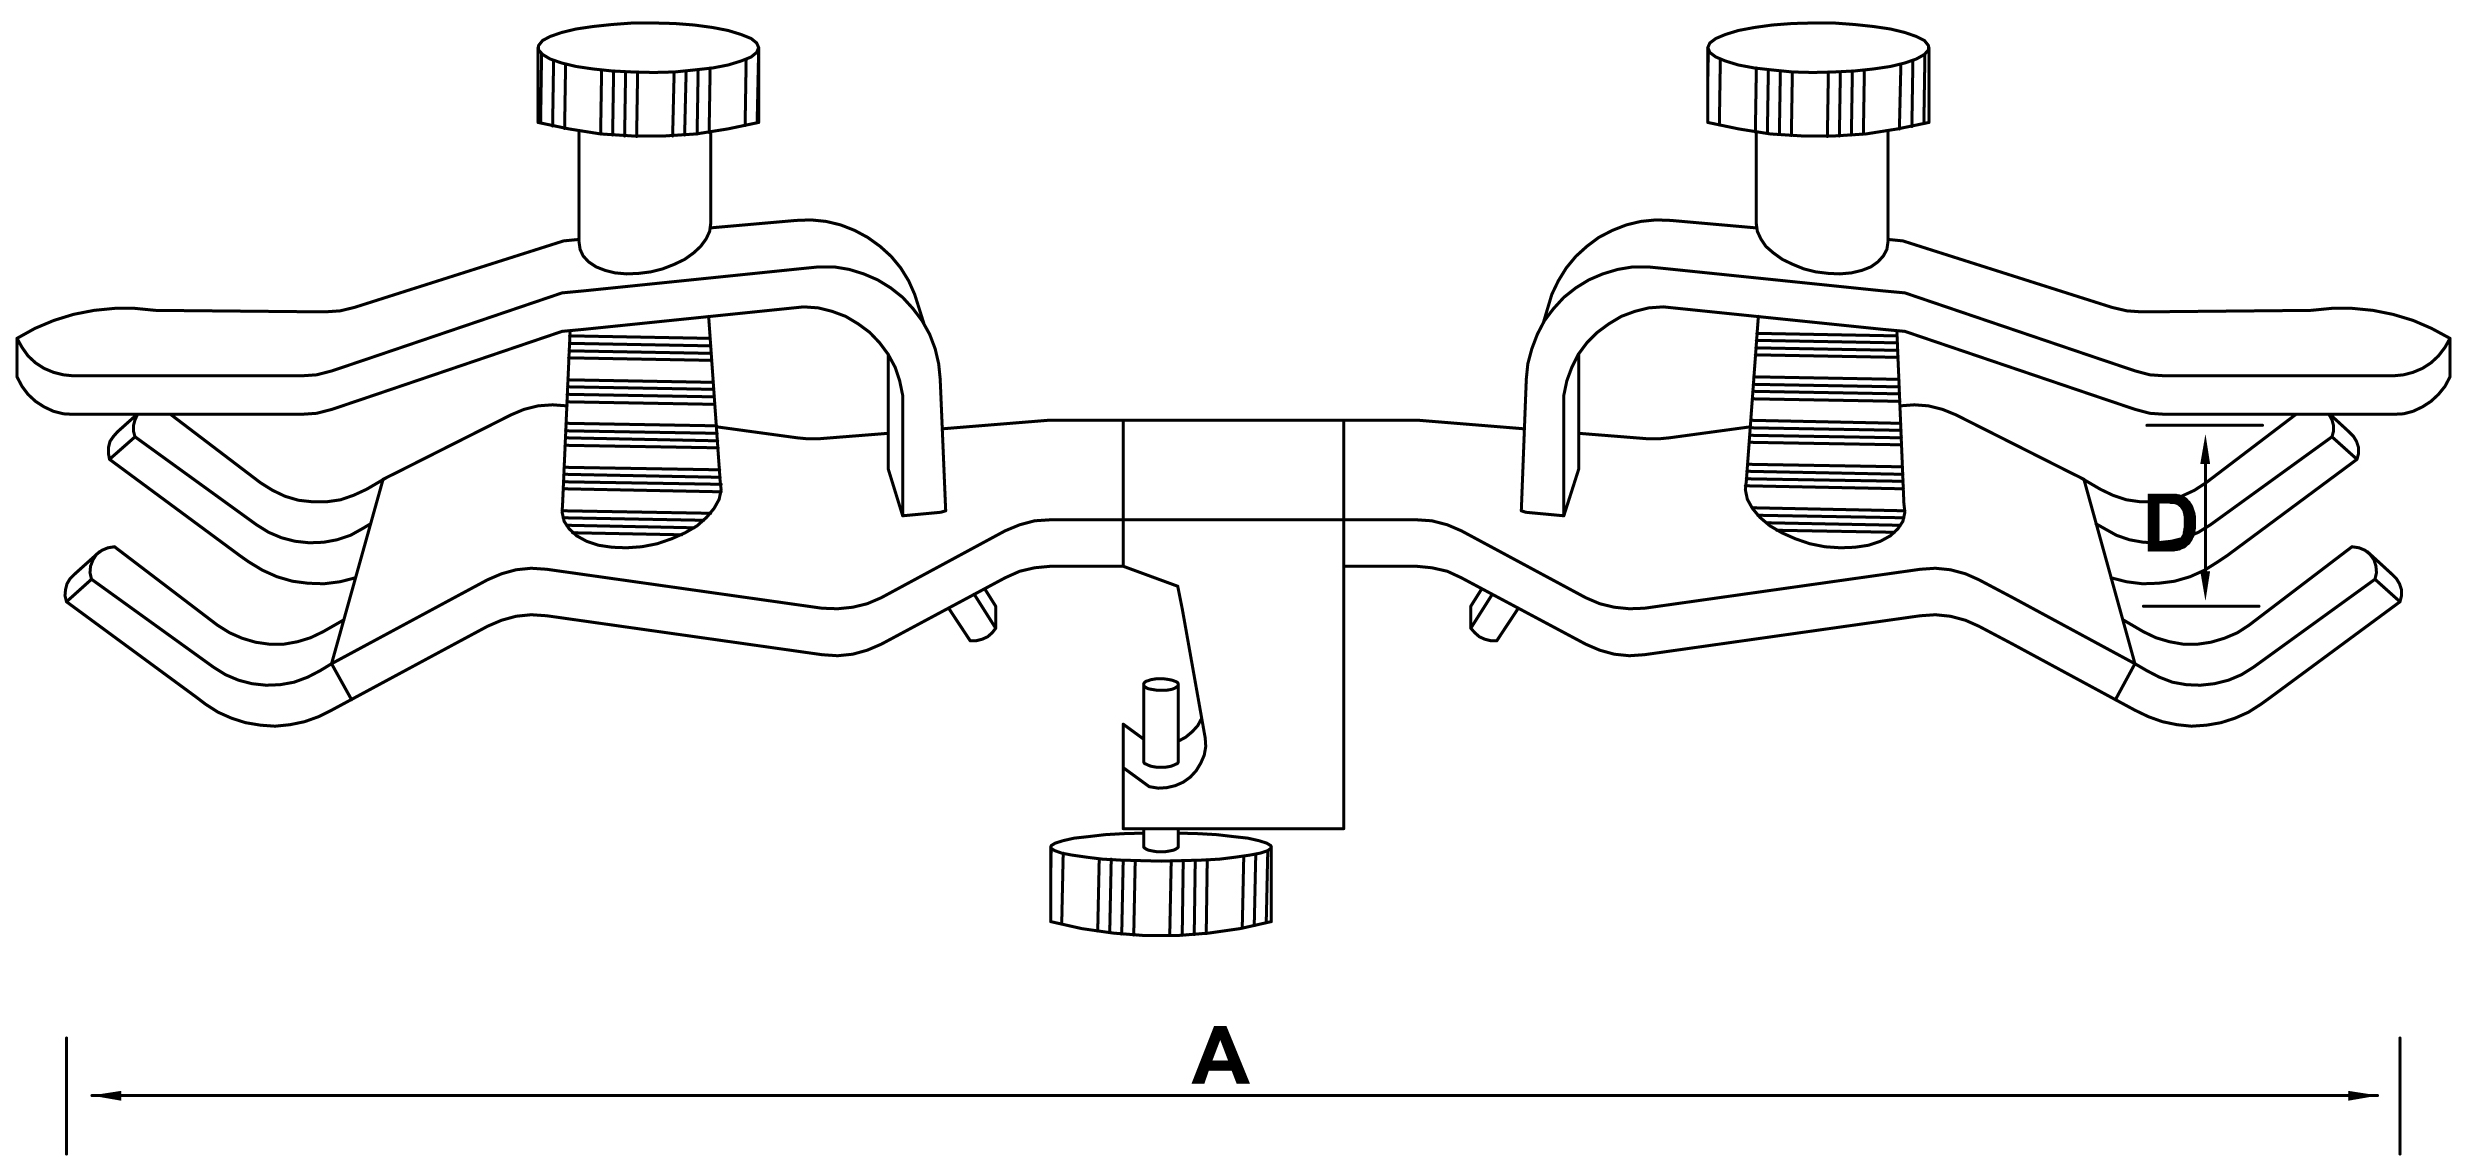 double burette clamp - schemat